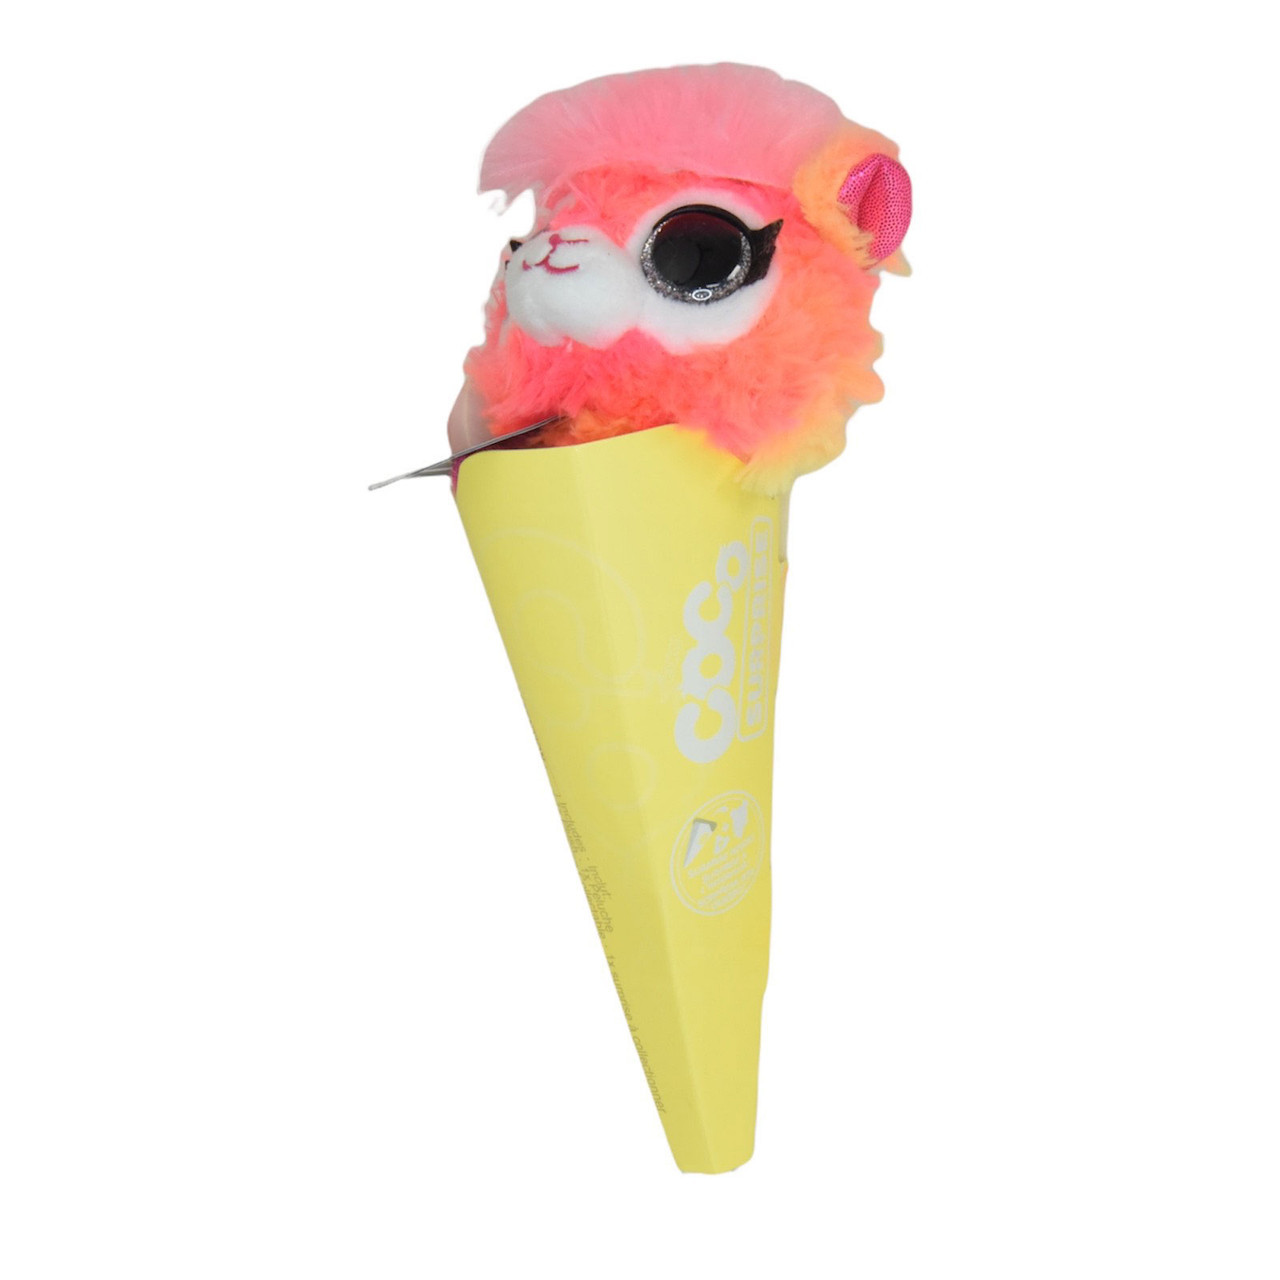 TOYBARN : Zuru Coco Surprise Neon Cones Llama Plush Toy with